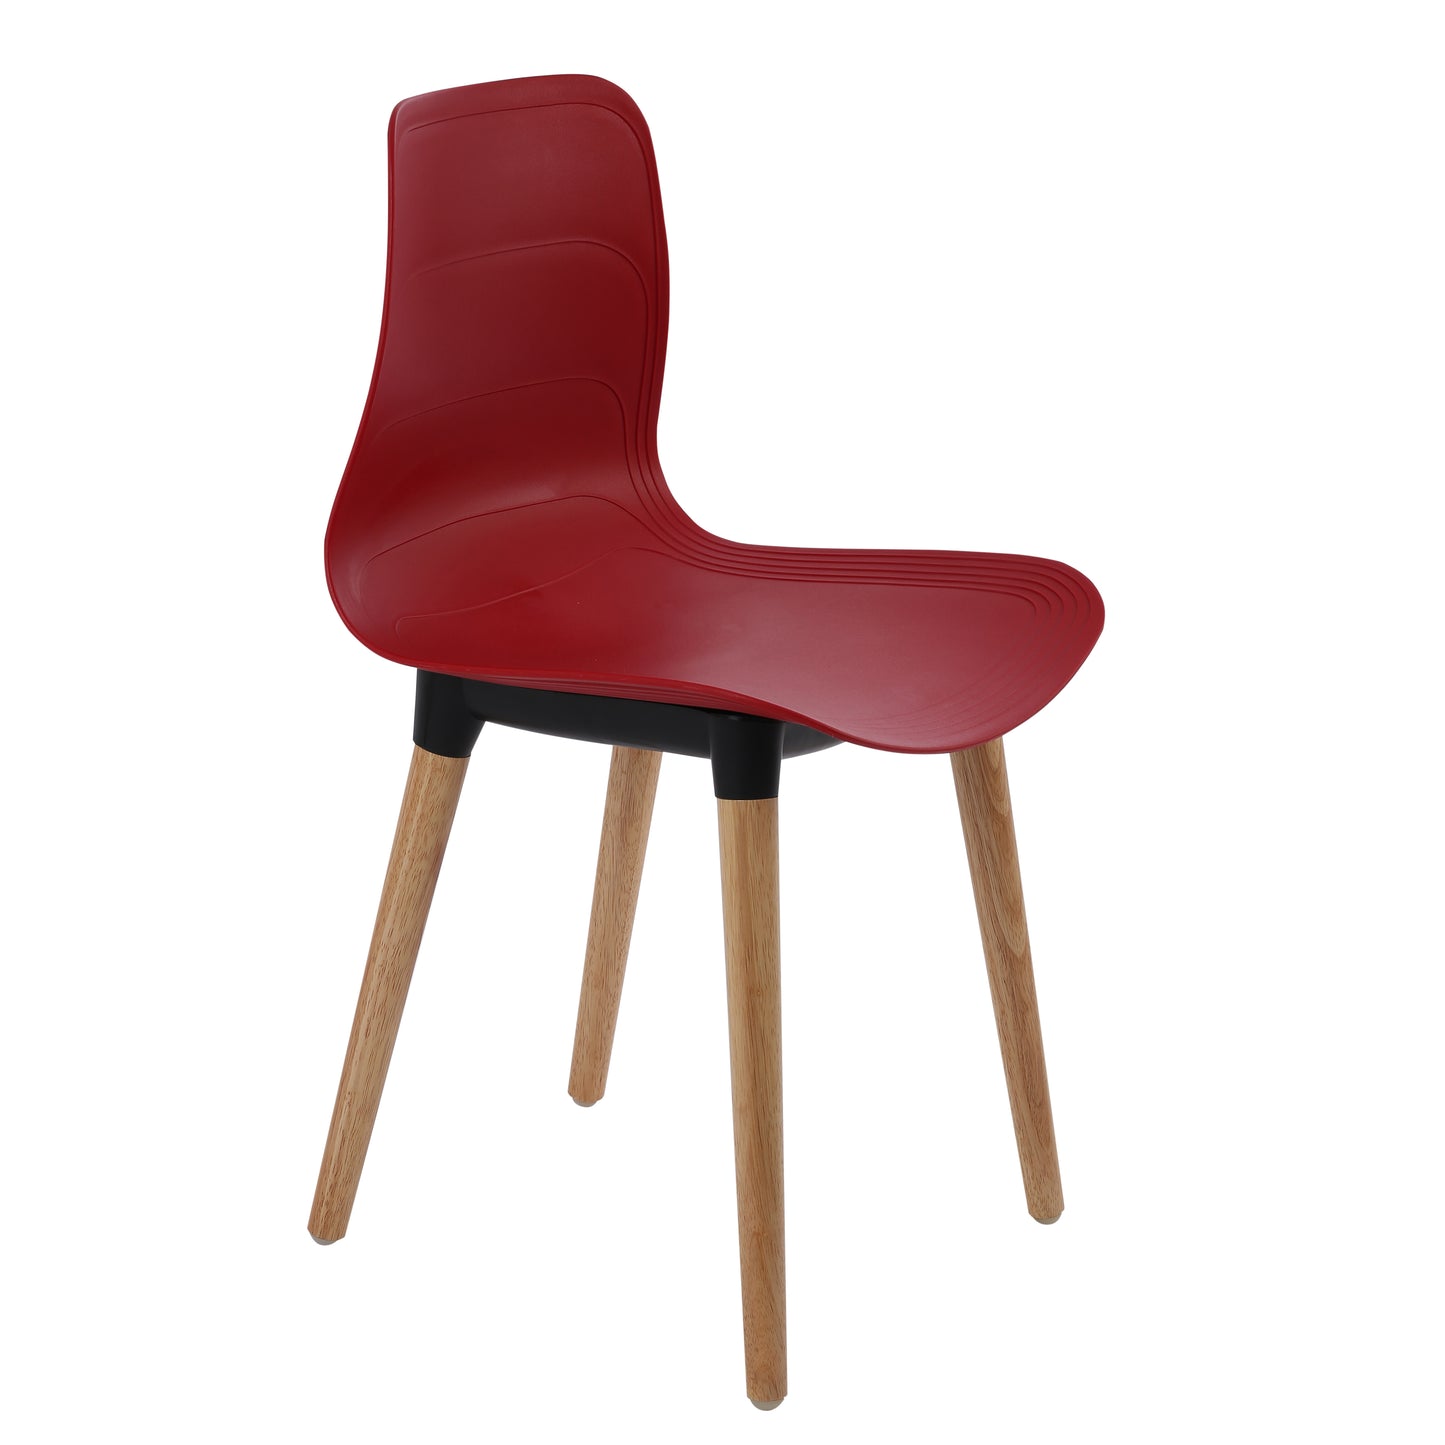 Ghế nhựa chân gỗ - HIFUWA - Hàng xuất khẩu - Màu đỏ đô